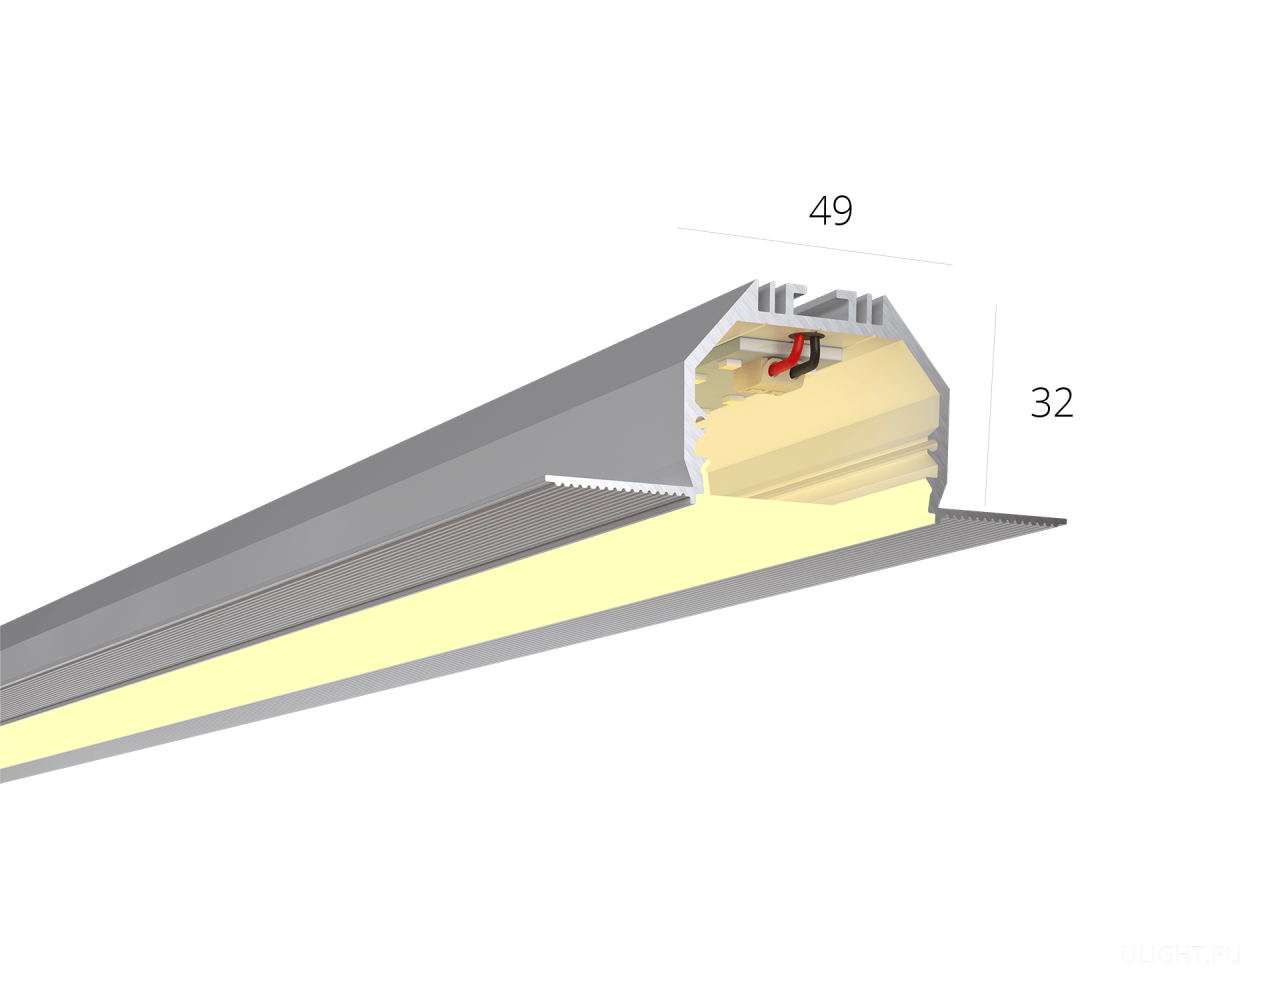 Безрамочный профиль под шпаклевку. 
Благодаря отсутствию рамки и сплошному рассеивателю на потолке видна только световая линия без стыков.